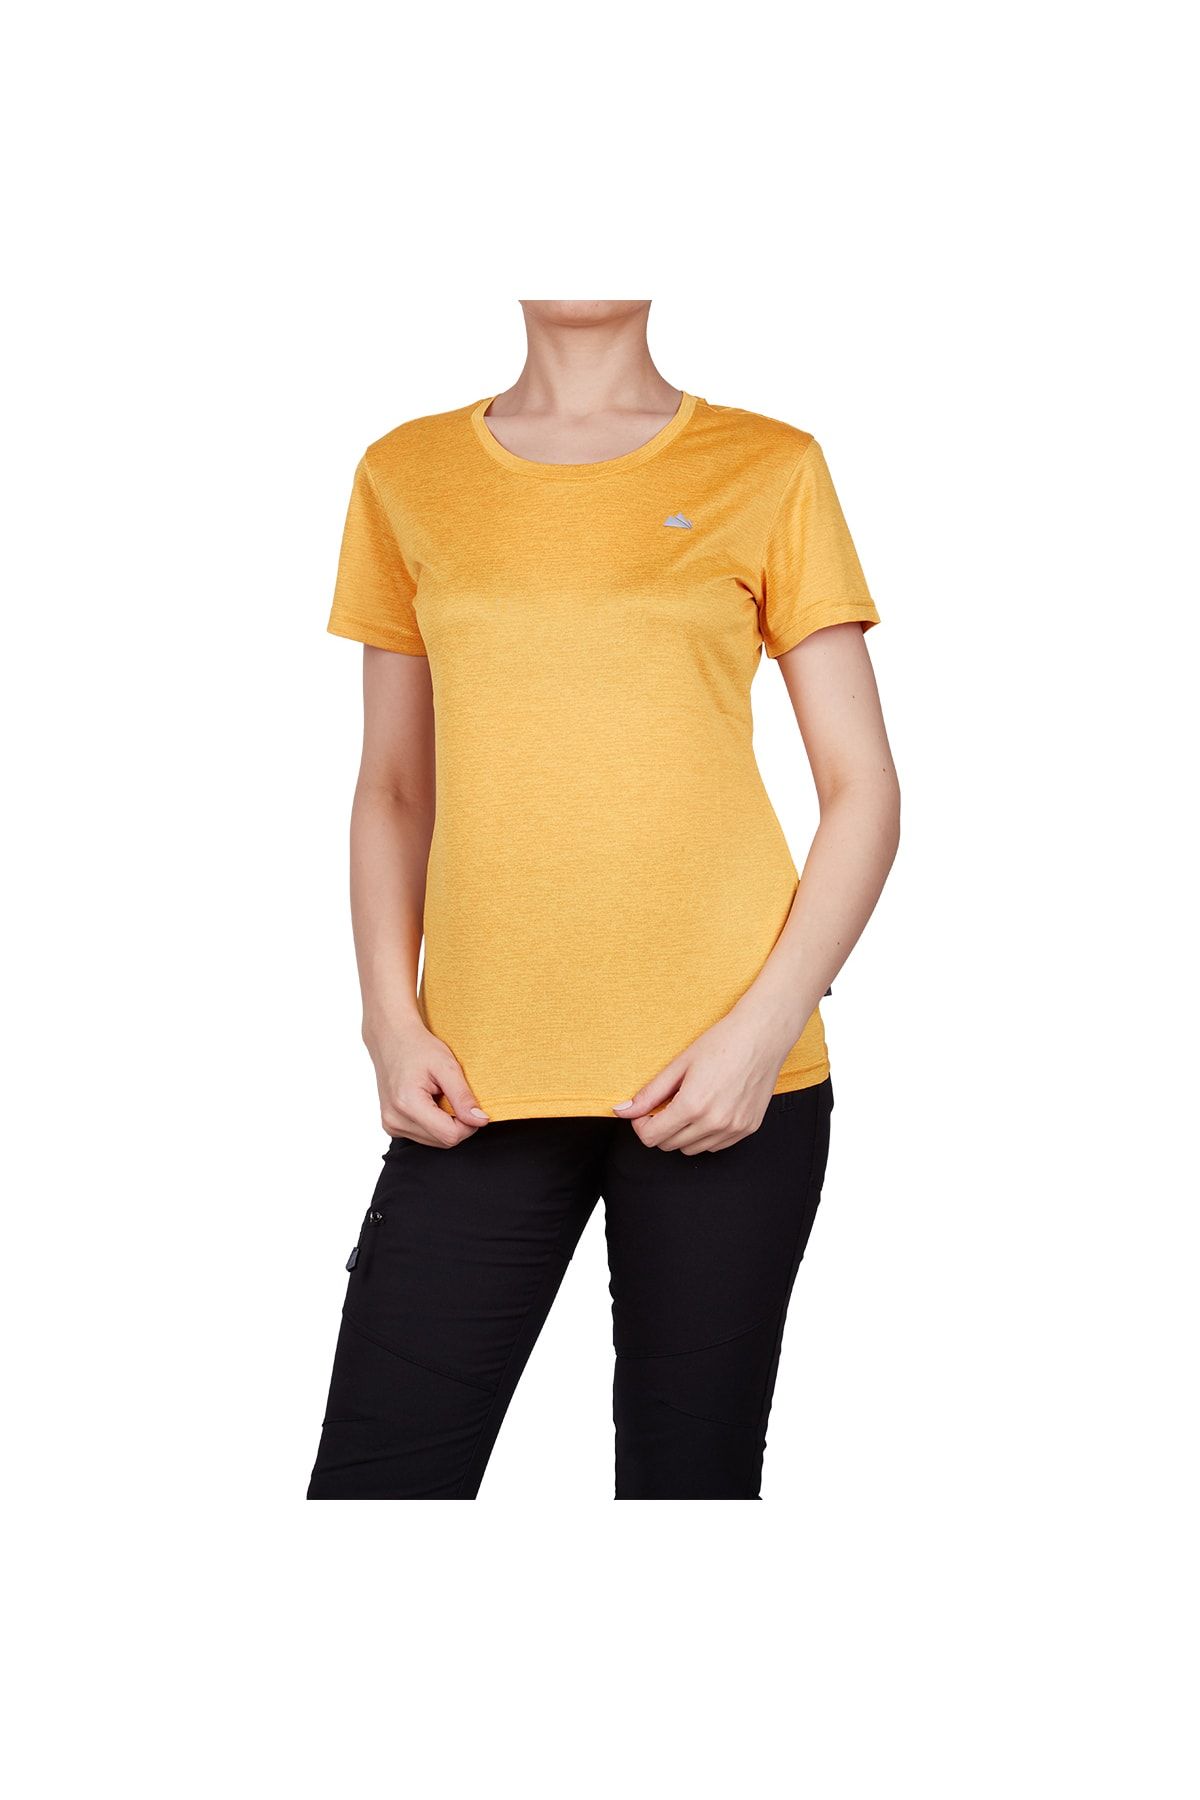 Alpinist Lumi Kadın T-shirt Sarı